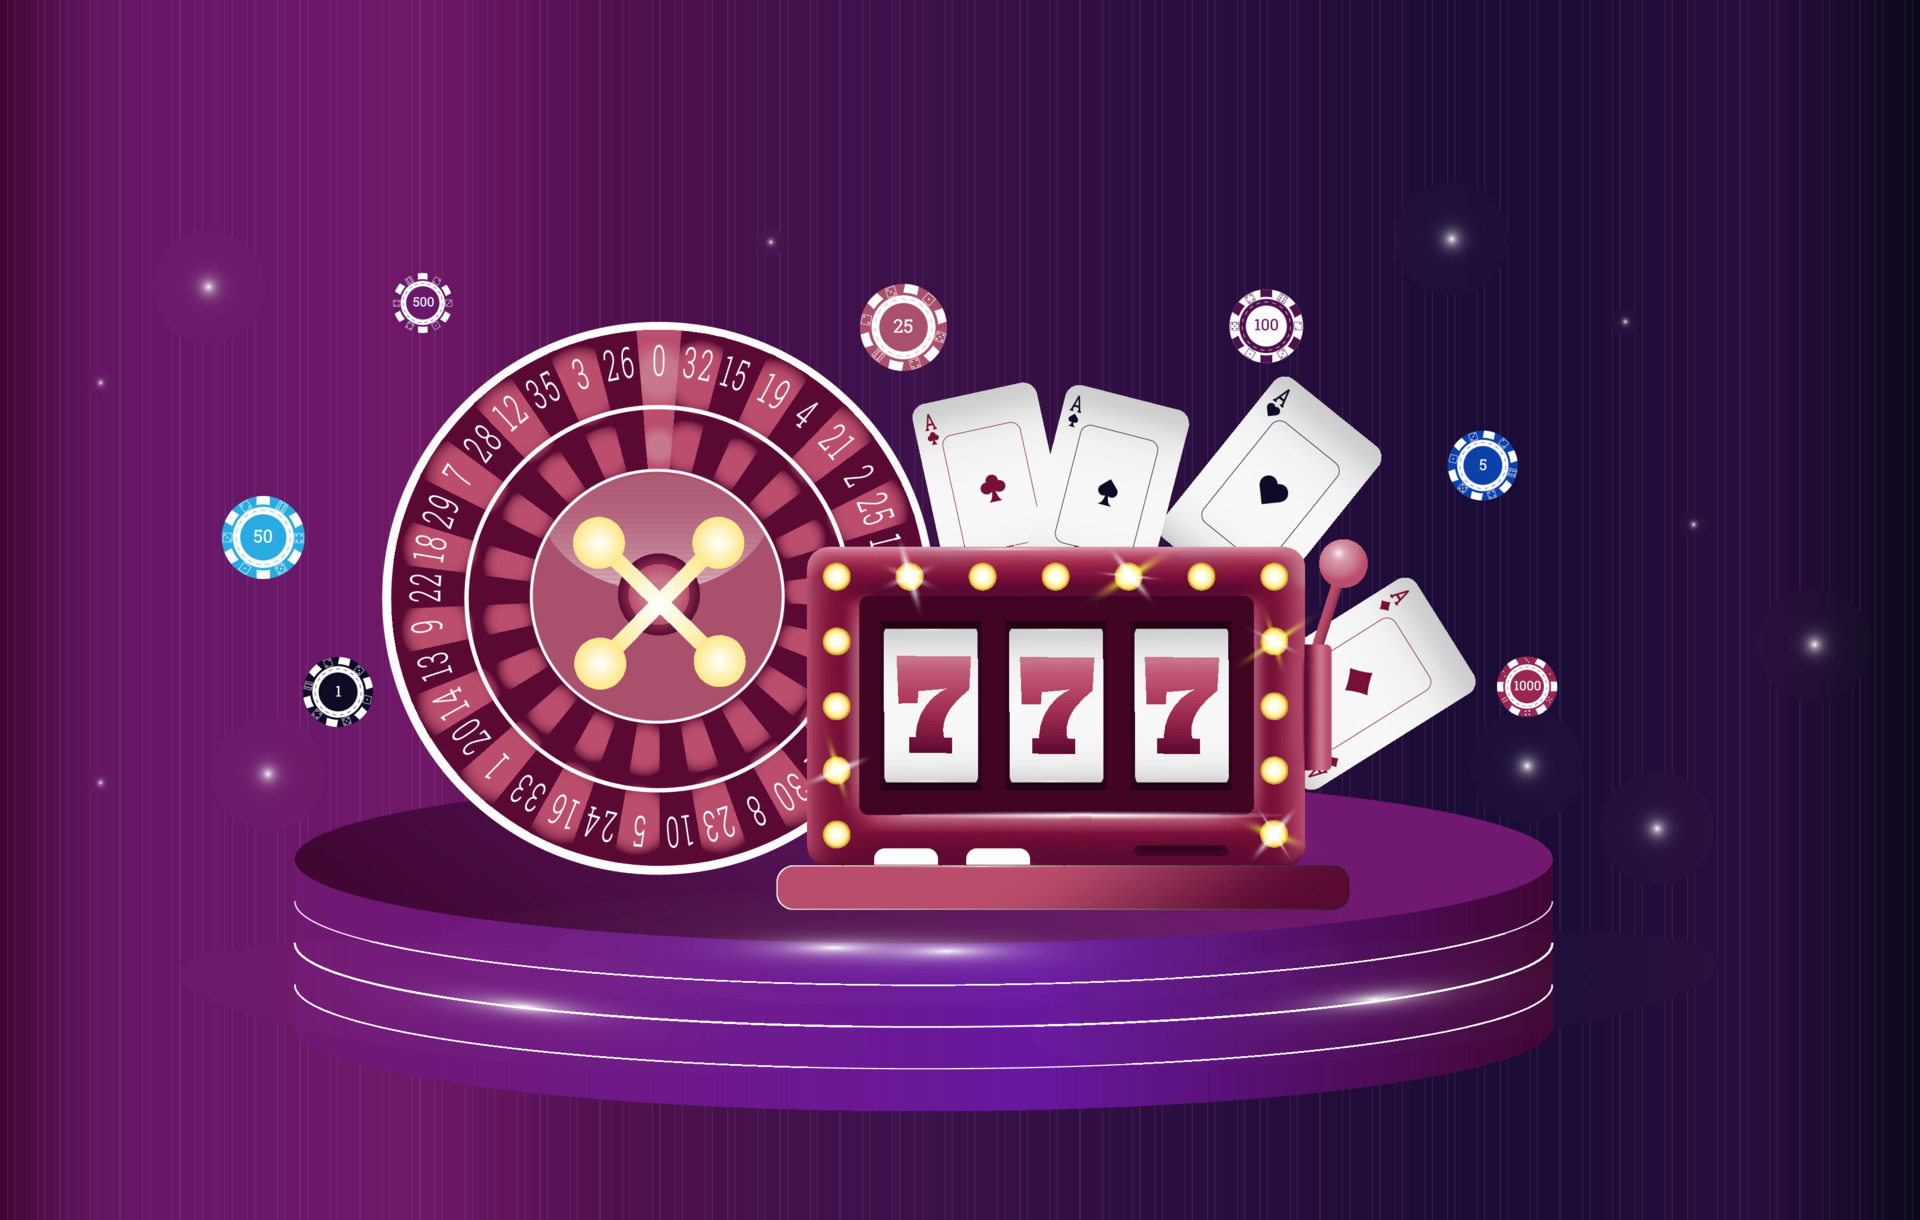 Rahasia Mengungkap Jackpot di Slot Online. Slot online telah menjadi salah satu permainan kasino paling populer di dunia maya